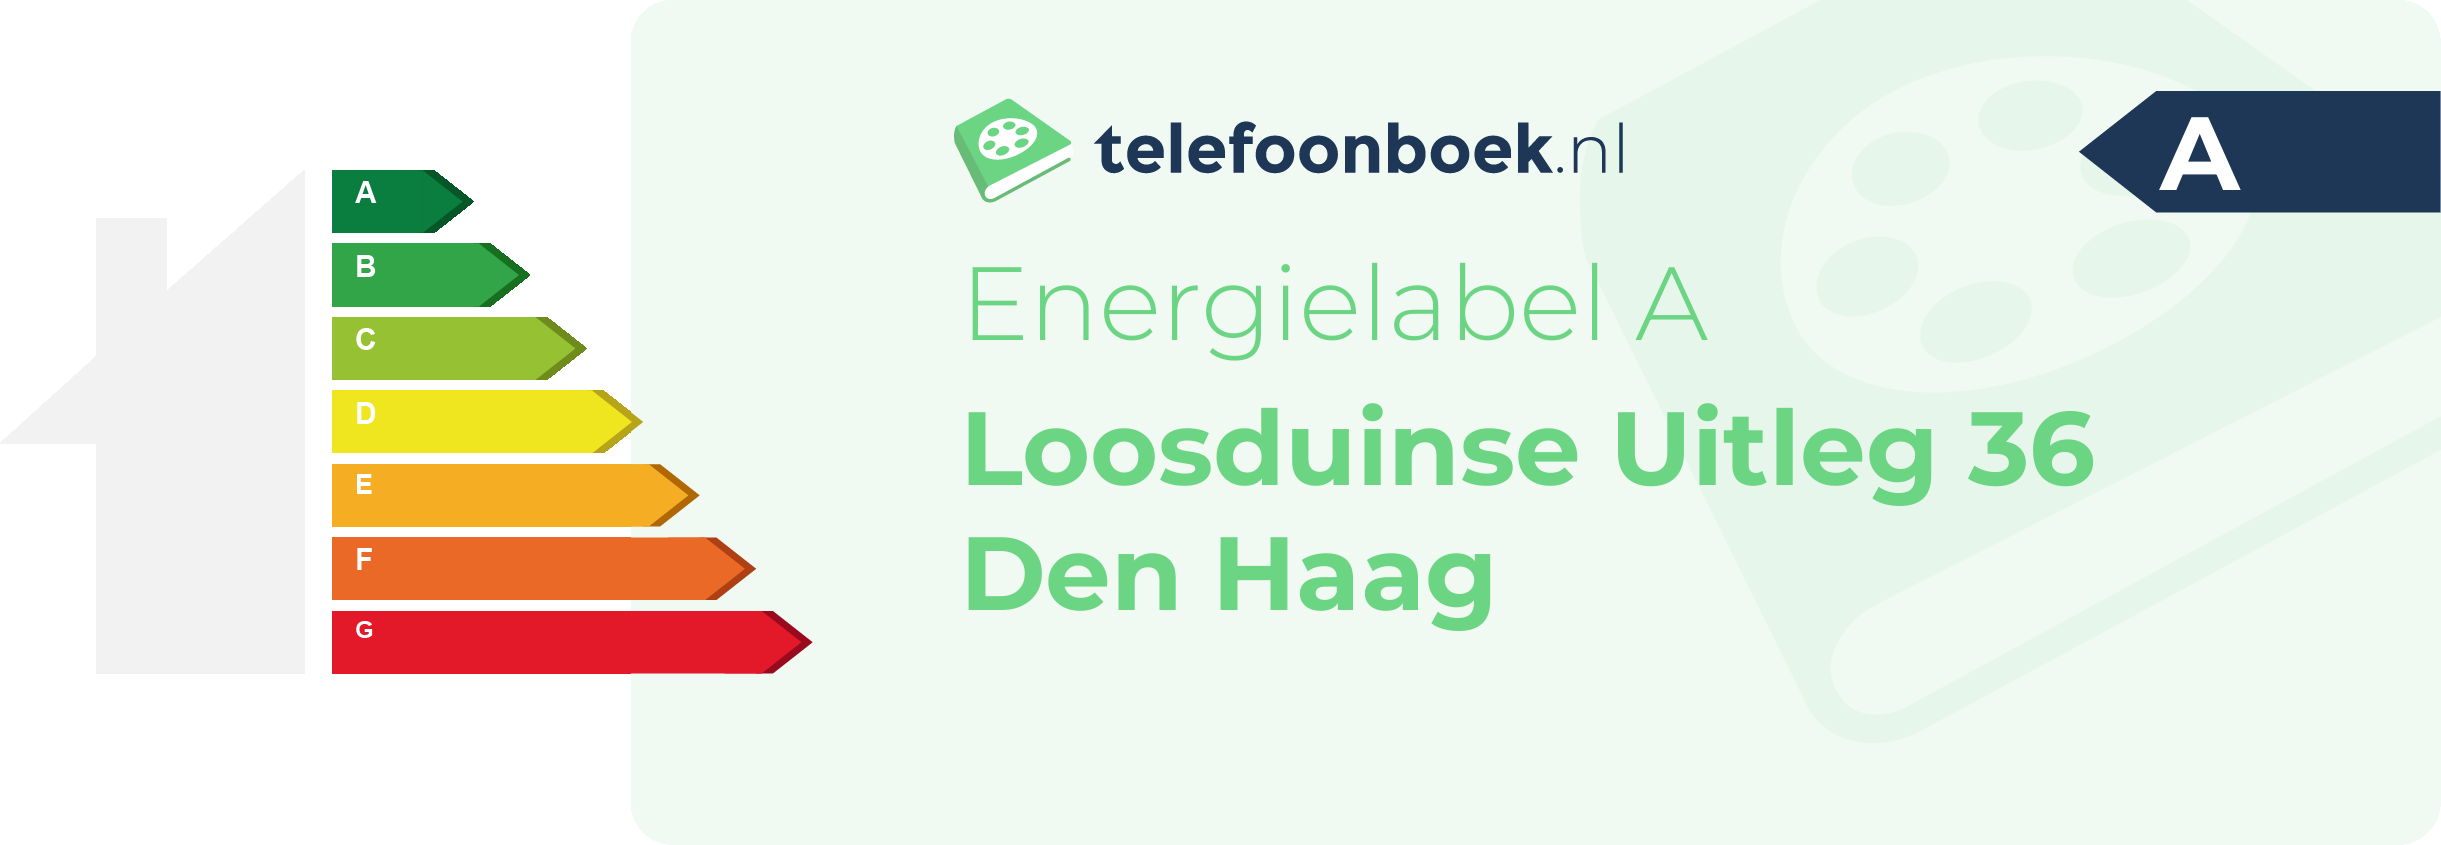 Energielabel Loosduinse Uitleg 36 Den Haag